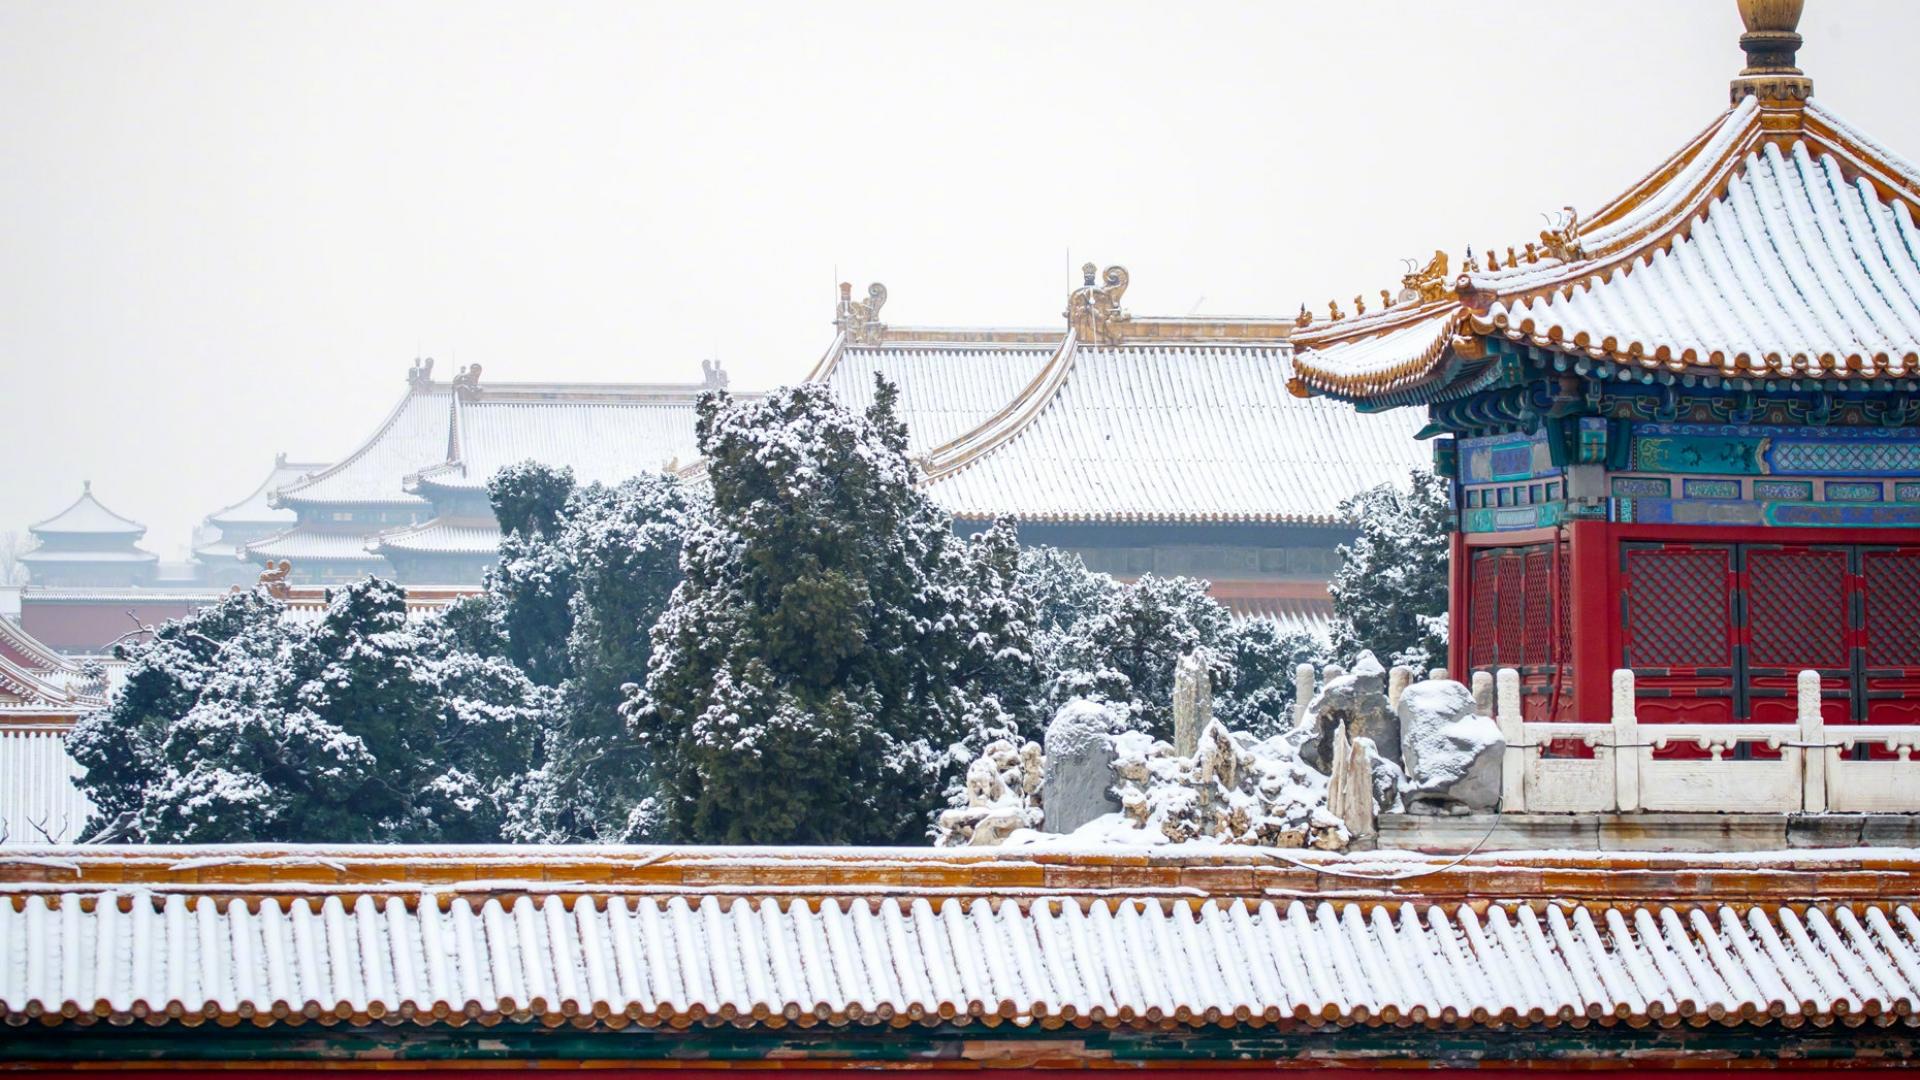 故宫的雪1366x768分辨率下载 故宫的雪 高清图片 旅游景点 桌面城市